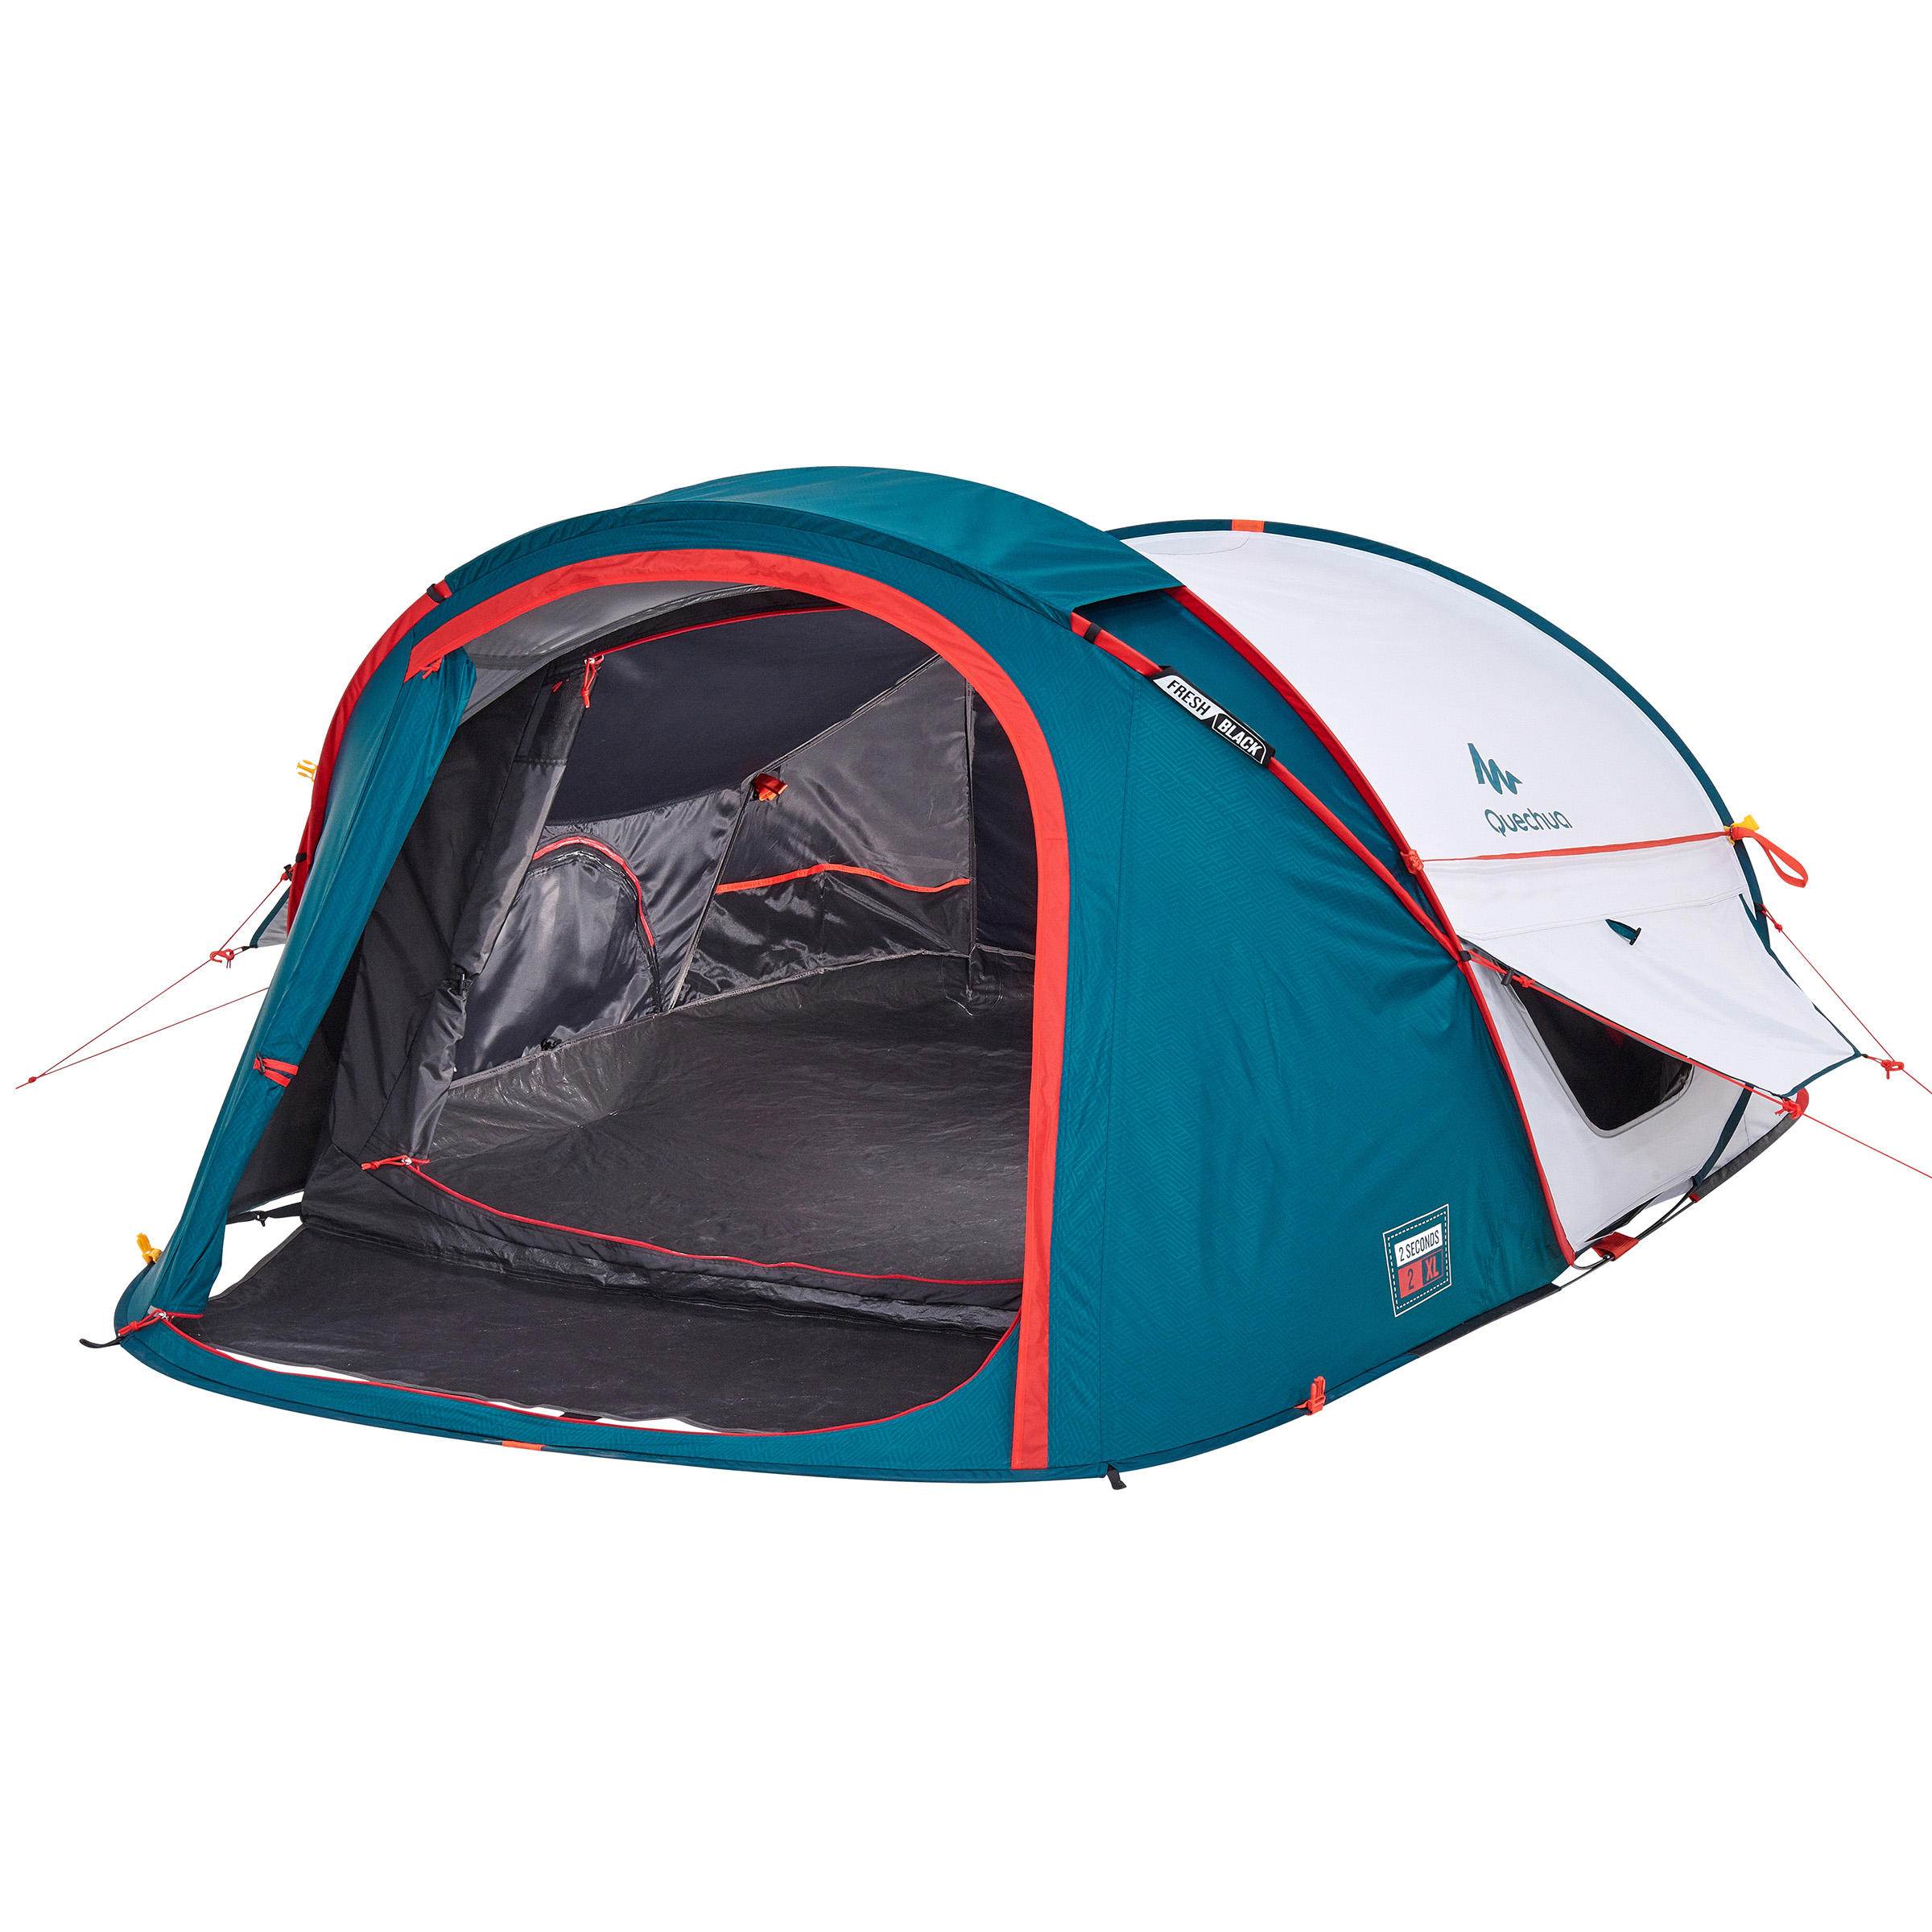 TecTake Tenda popup campeggio 2 posti automatica instant con picchetti e borsa Blu-Arancione | no. 401674 disponibile in diversi colori 